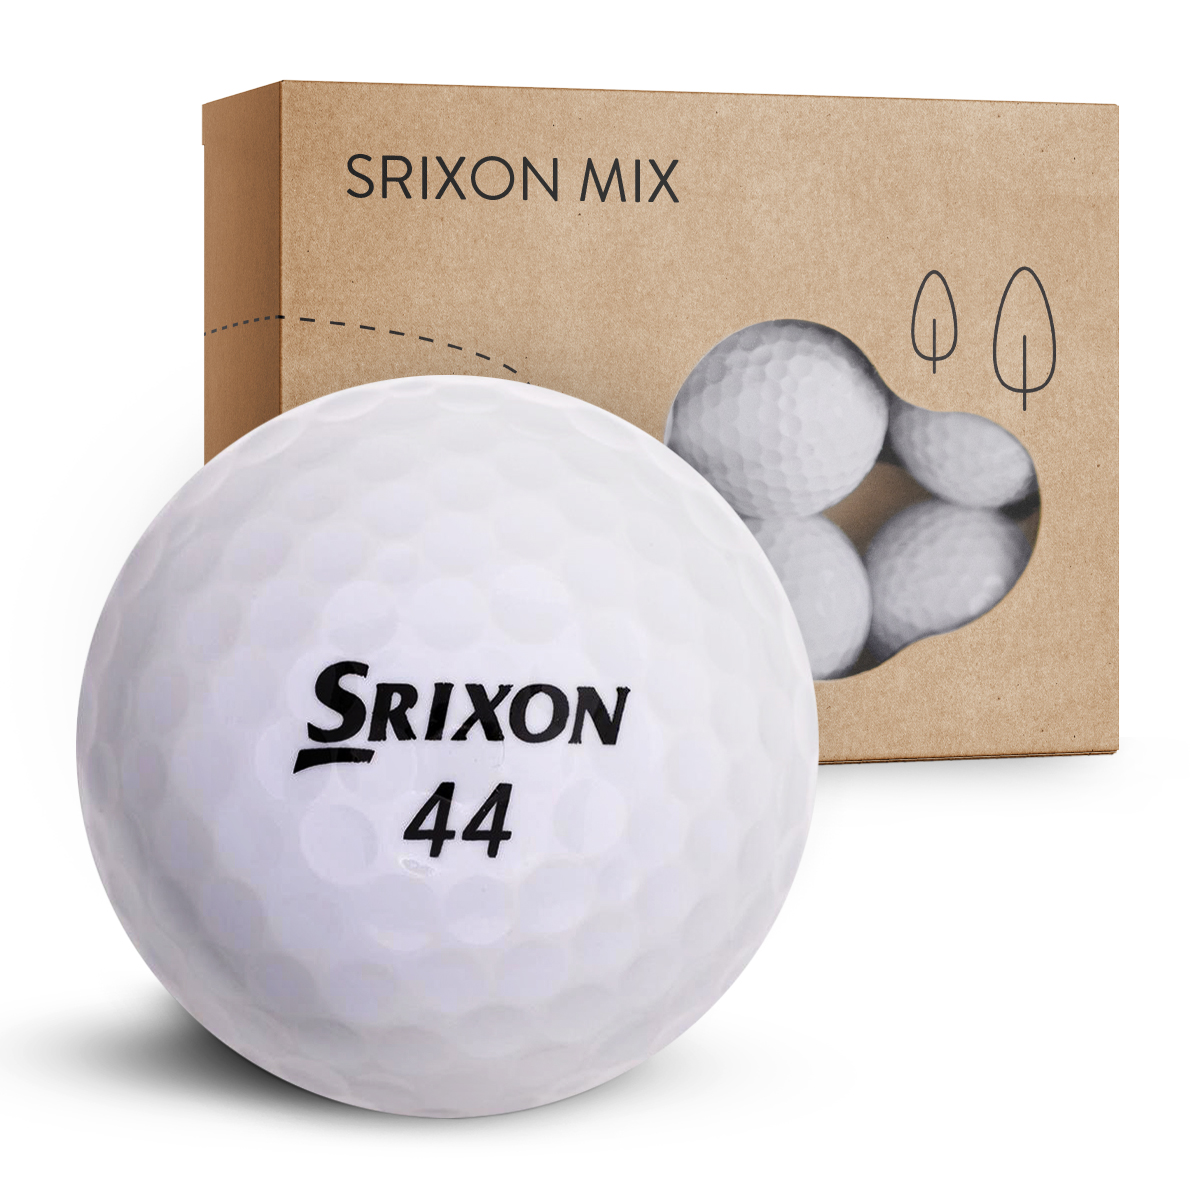 Srixon Mix